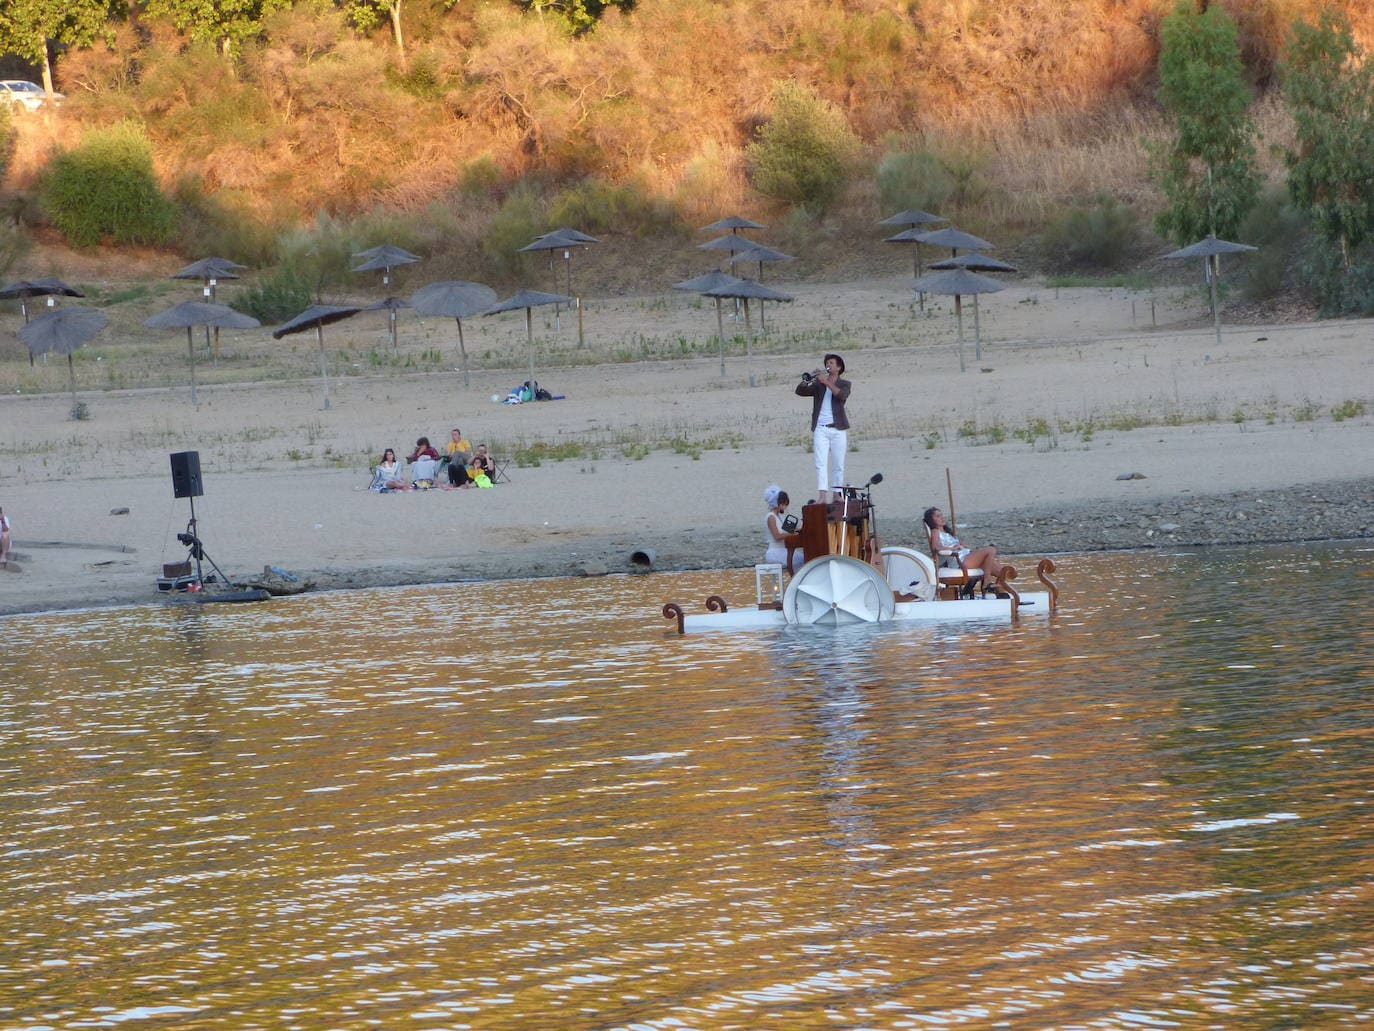 El concierto flotante 'El pedalOpiano' hizo parada en la Isla del Zújar